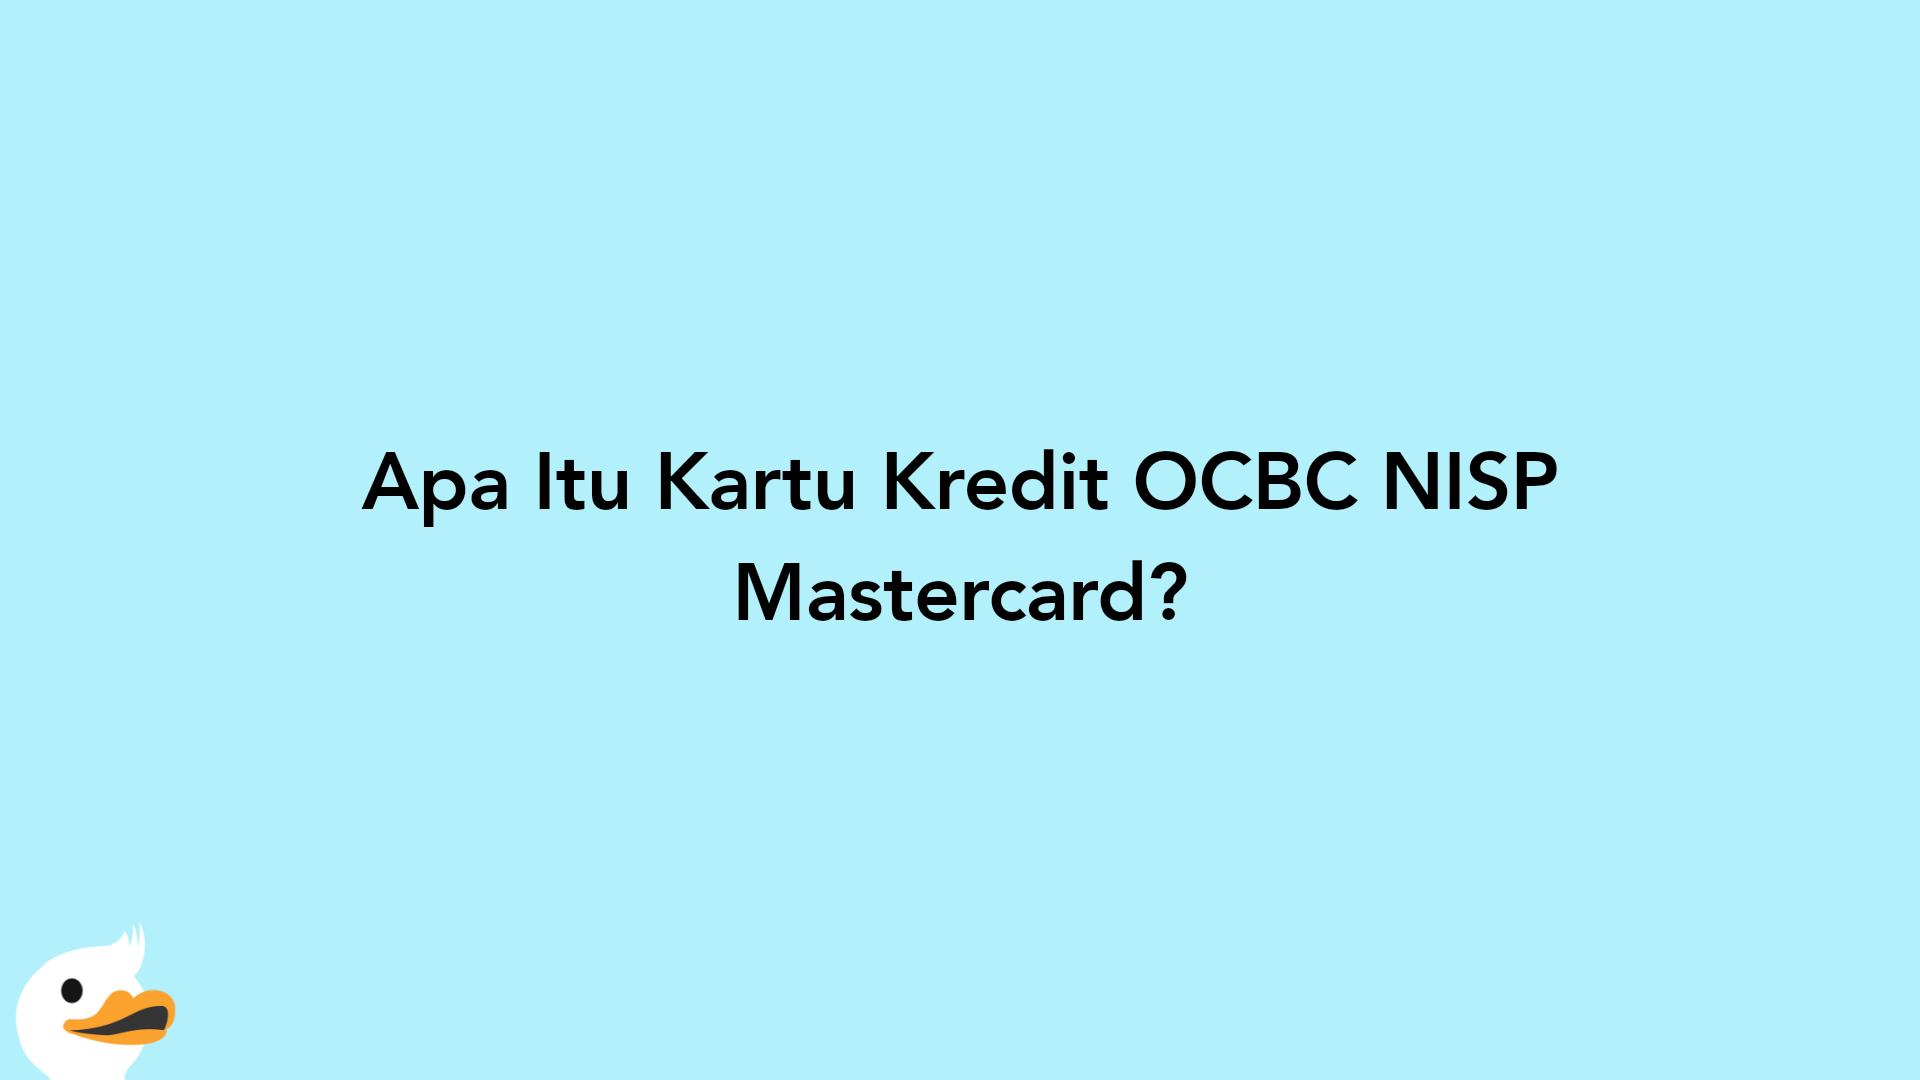 Apa Itu Kartu Kredit OCBC NISP Mastercard?